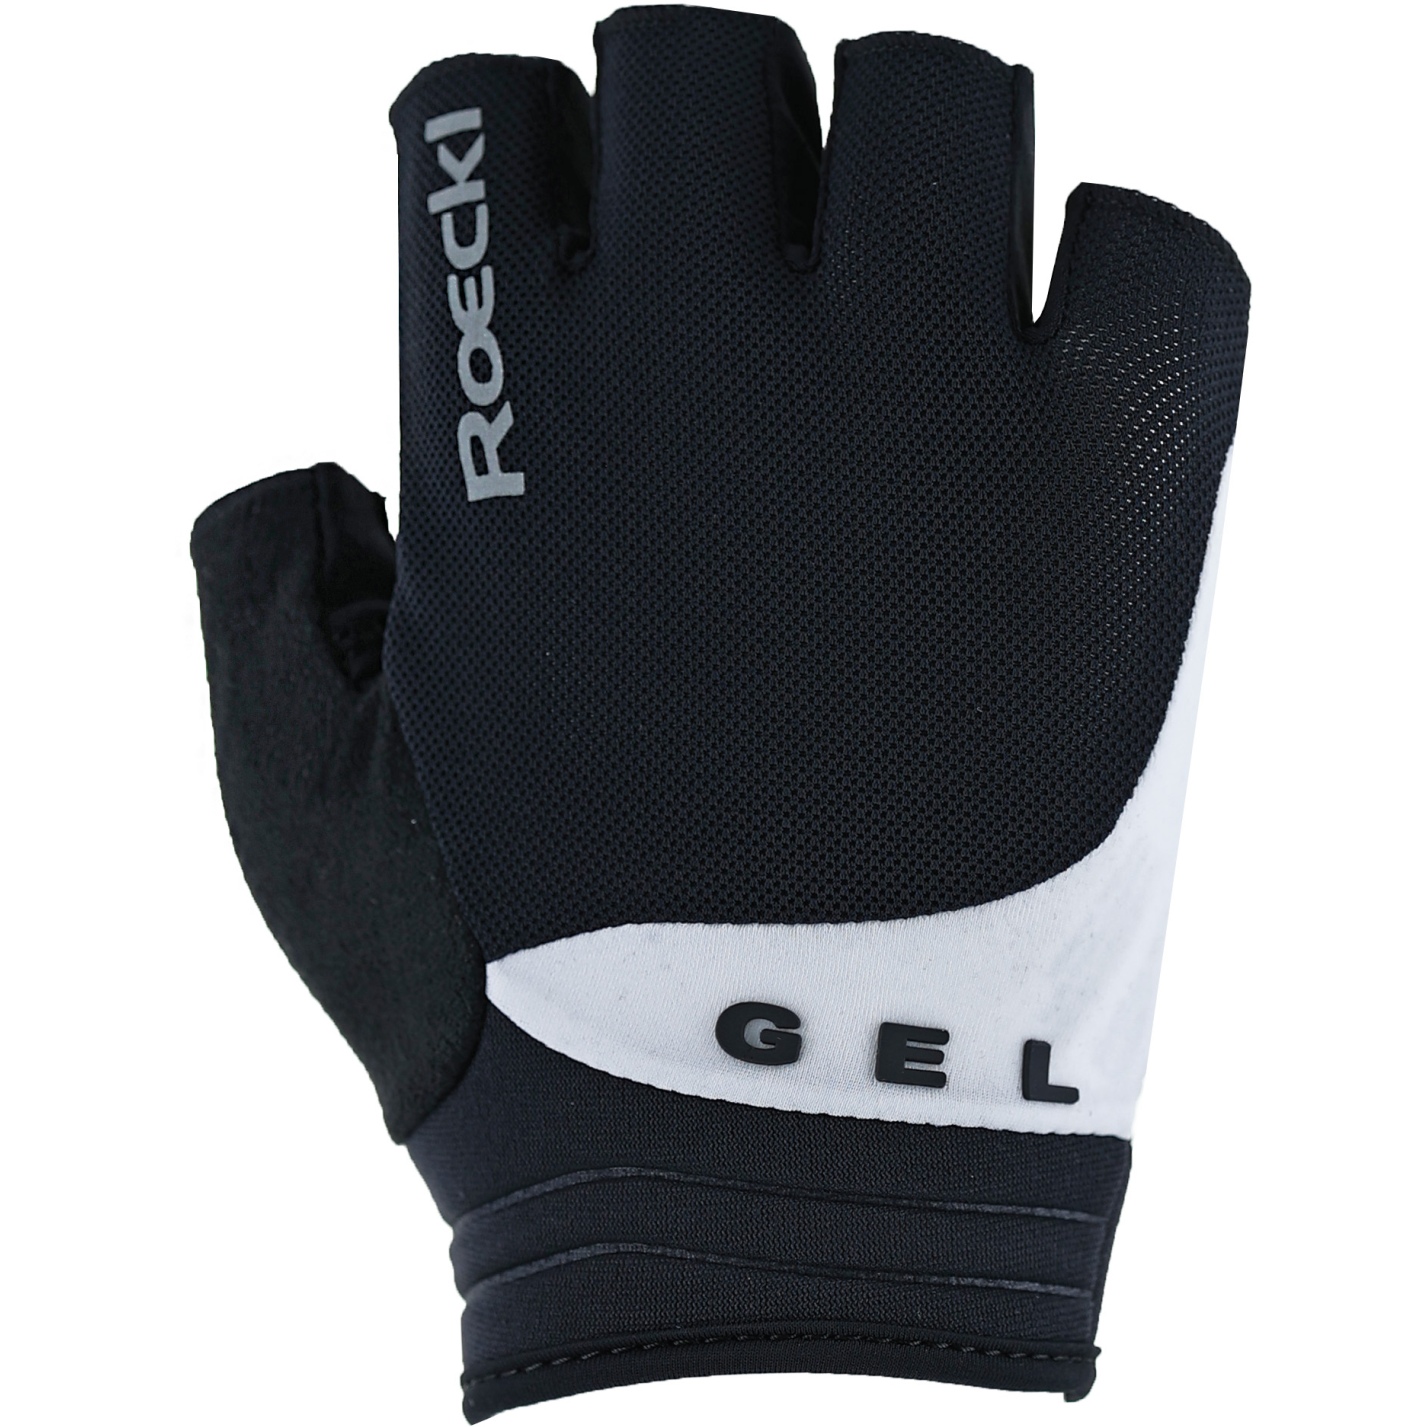 Productfoto van Roeckl Sports Itamos 2 Fietshandschoenen - zwart/wit 9100